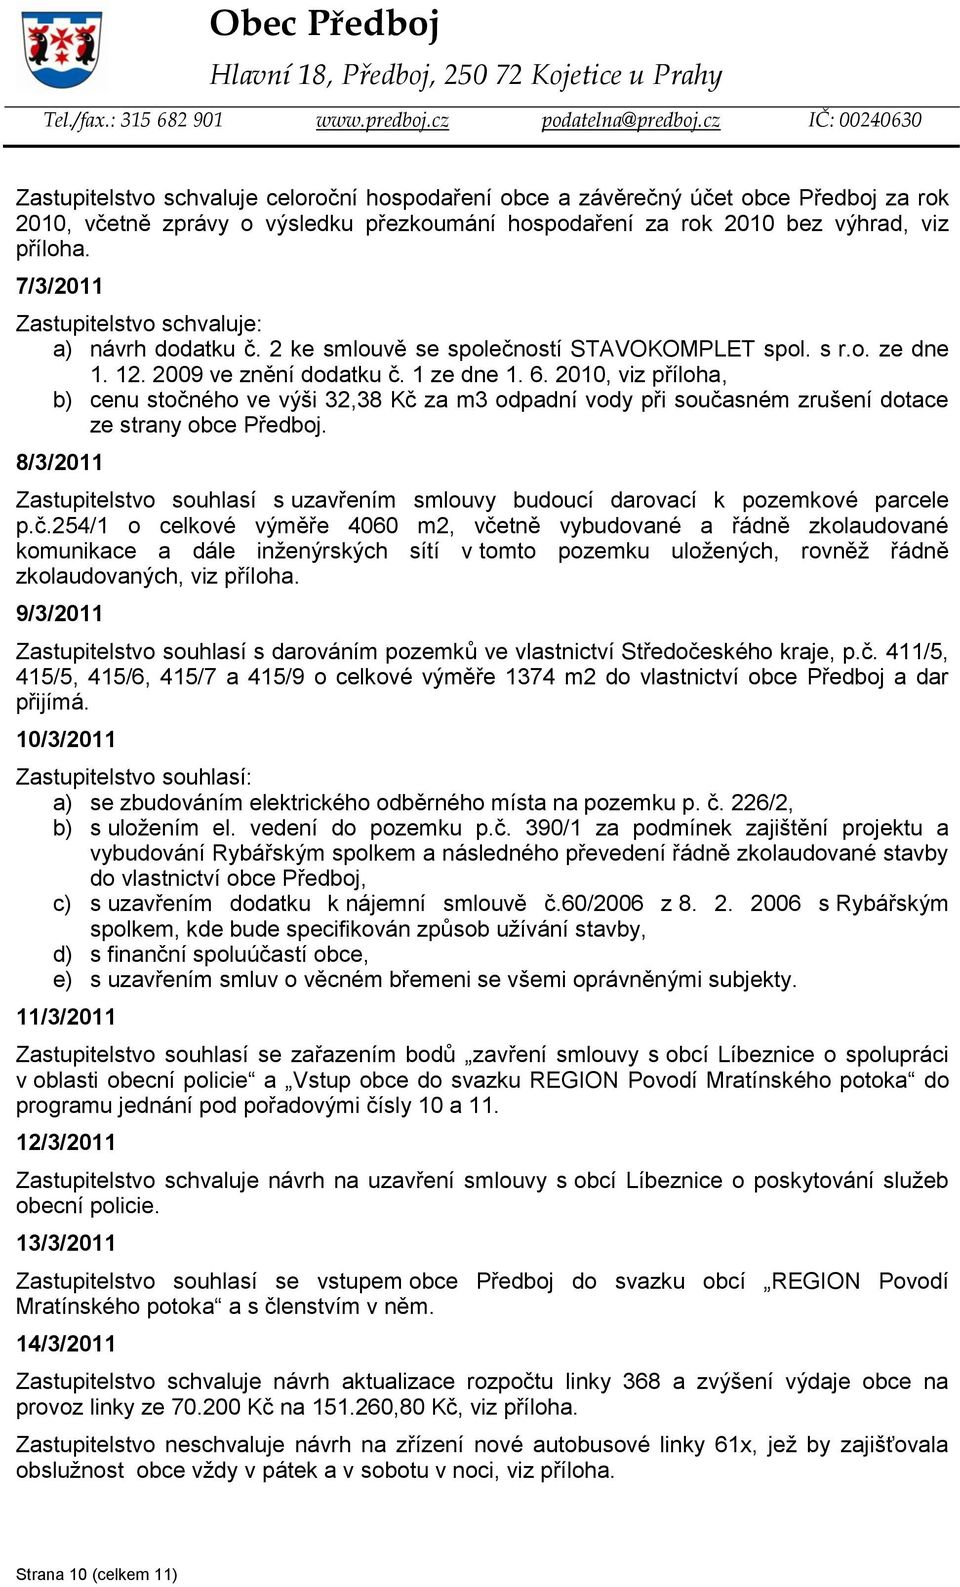 2010, viz příloha, b) cenu stočného ve výši 32,38 Kč za m3 odpadní vody při současném zrušení dotace ze strany obce Předboj.